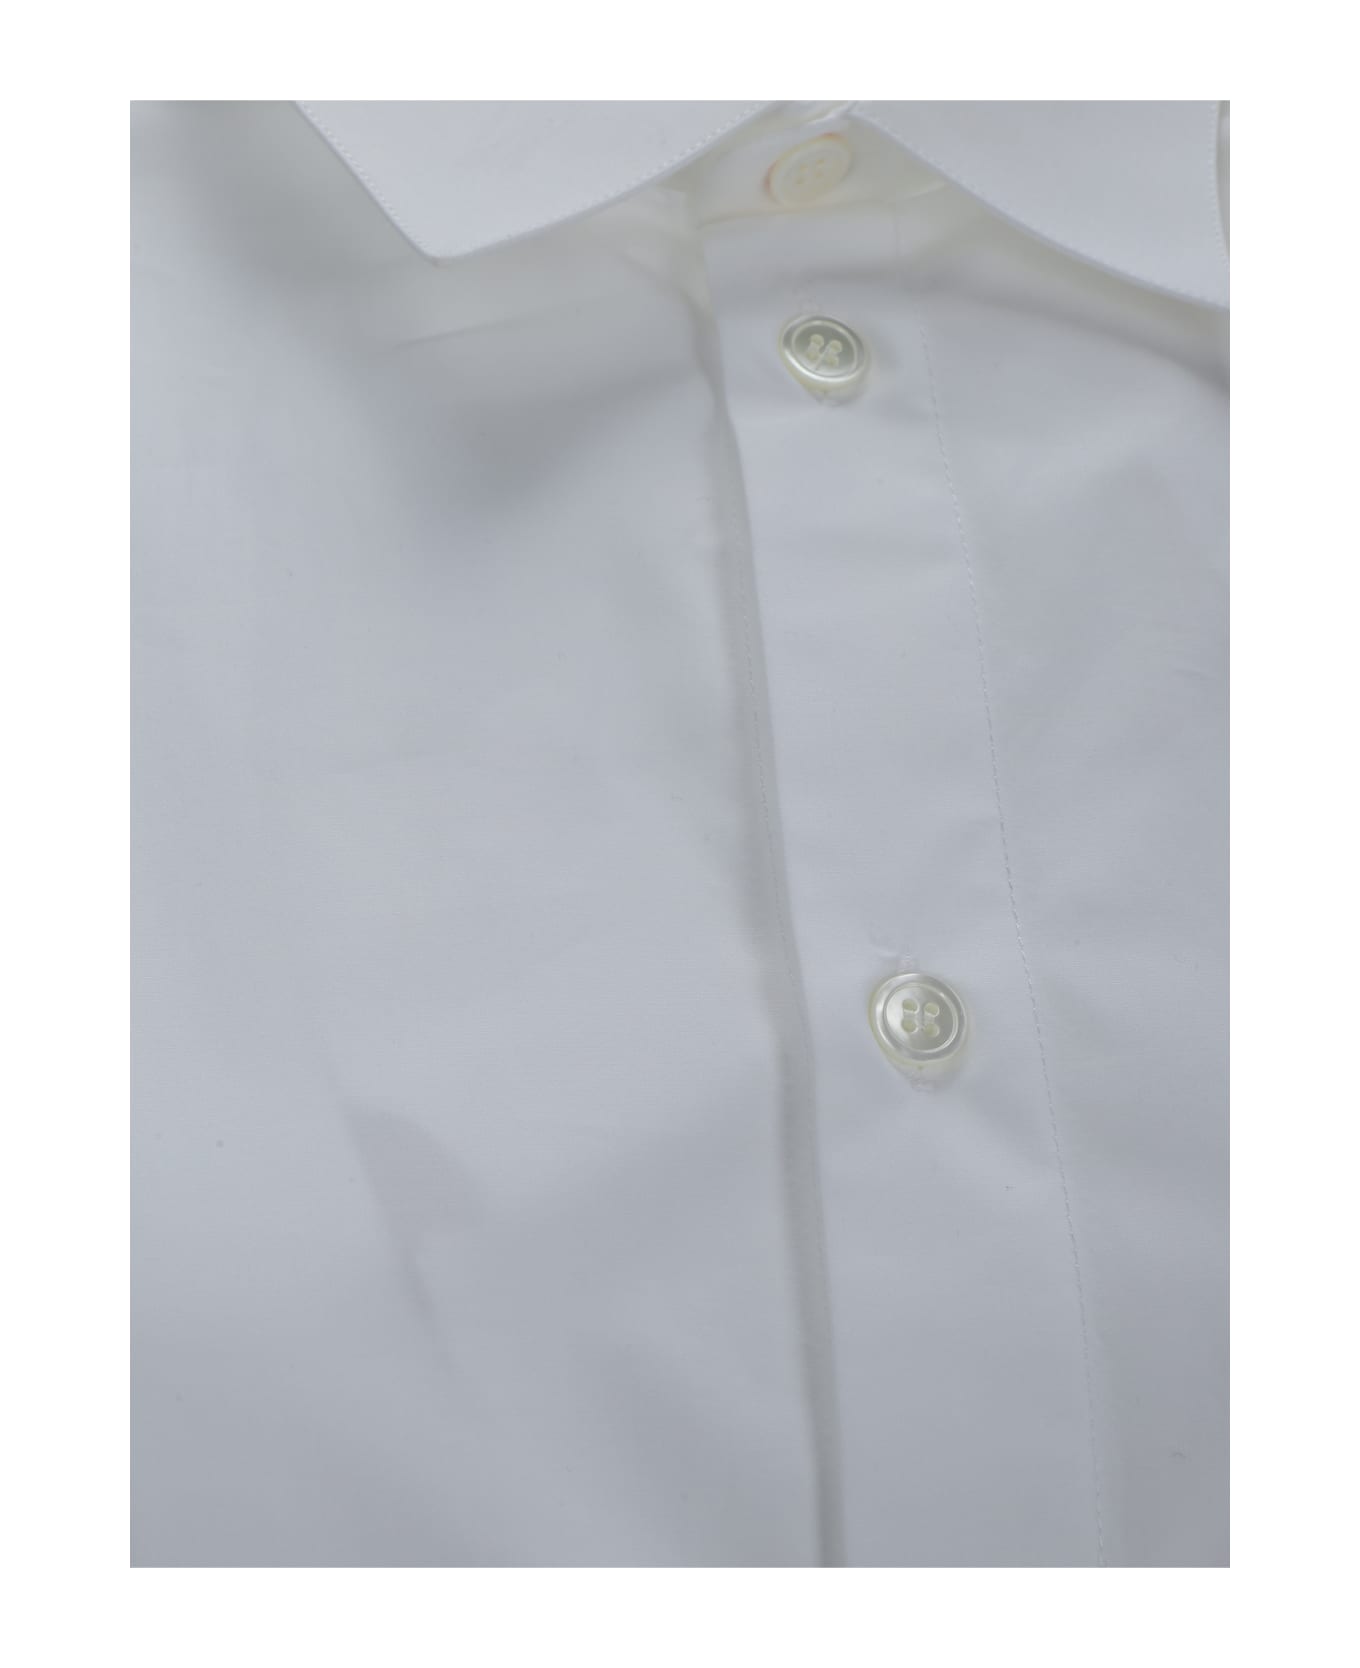 Marni Shirt - WHITE シャツ